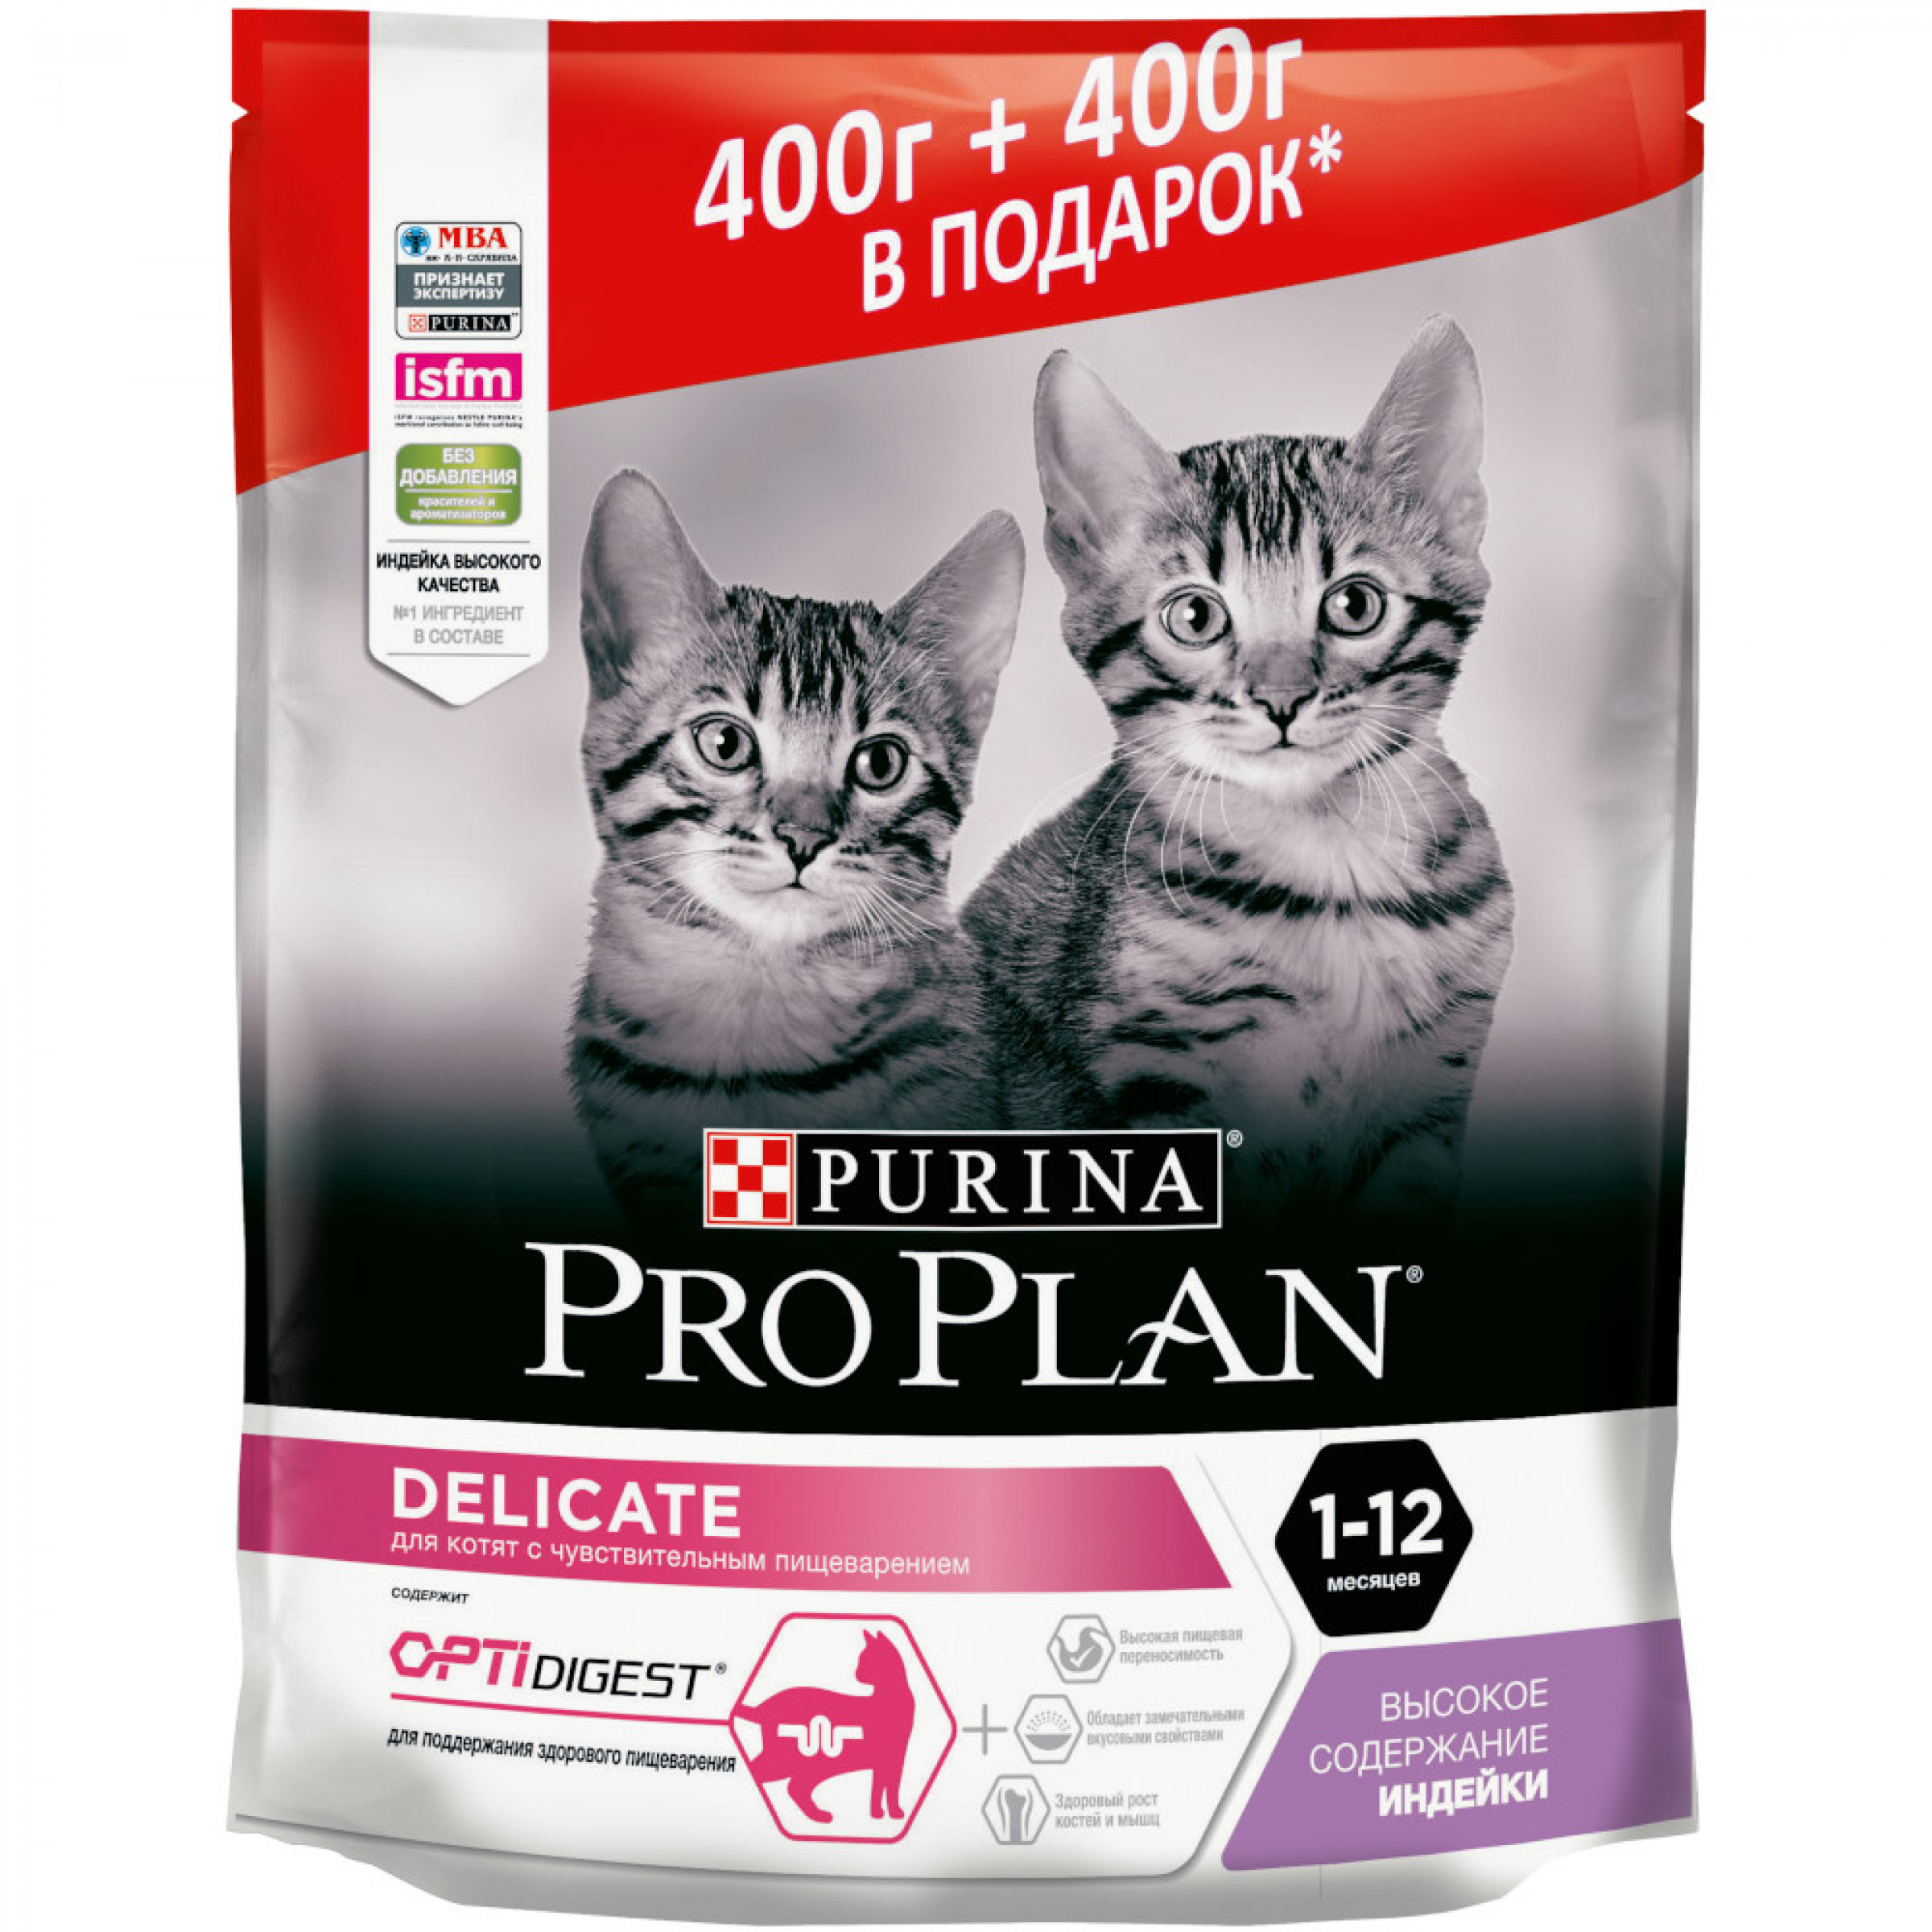 Сухой корм Pro Plan для котят с чувствительным пищеварением с индейкой, 400 гр + 400 гр в подарок